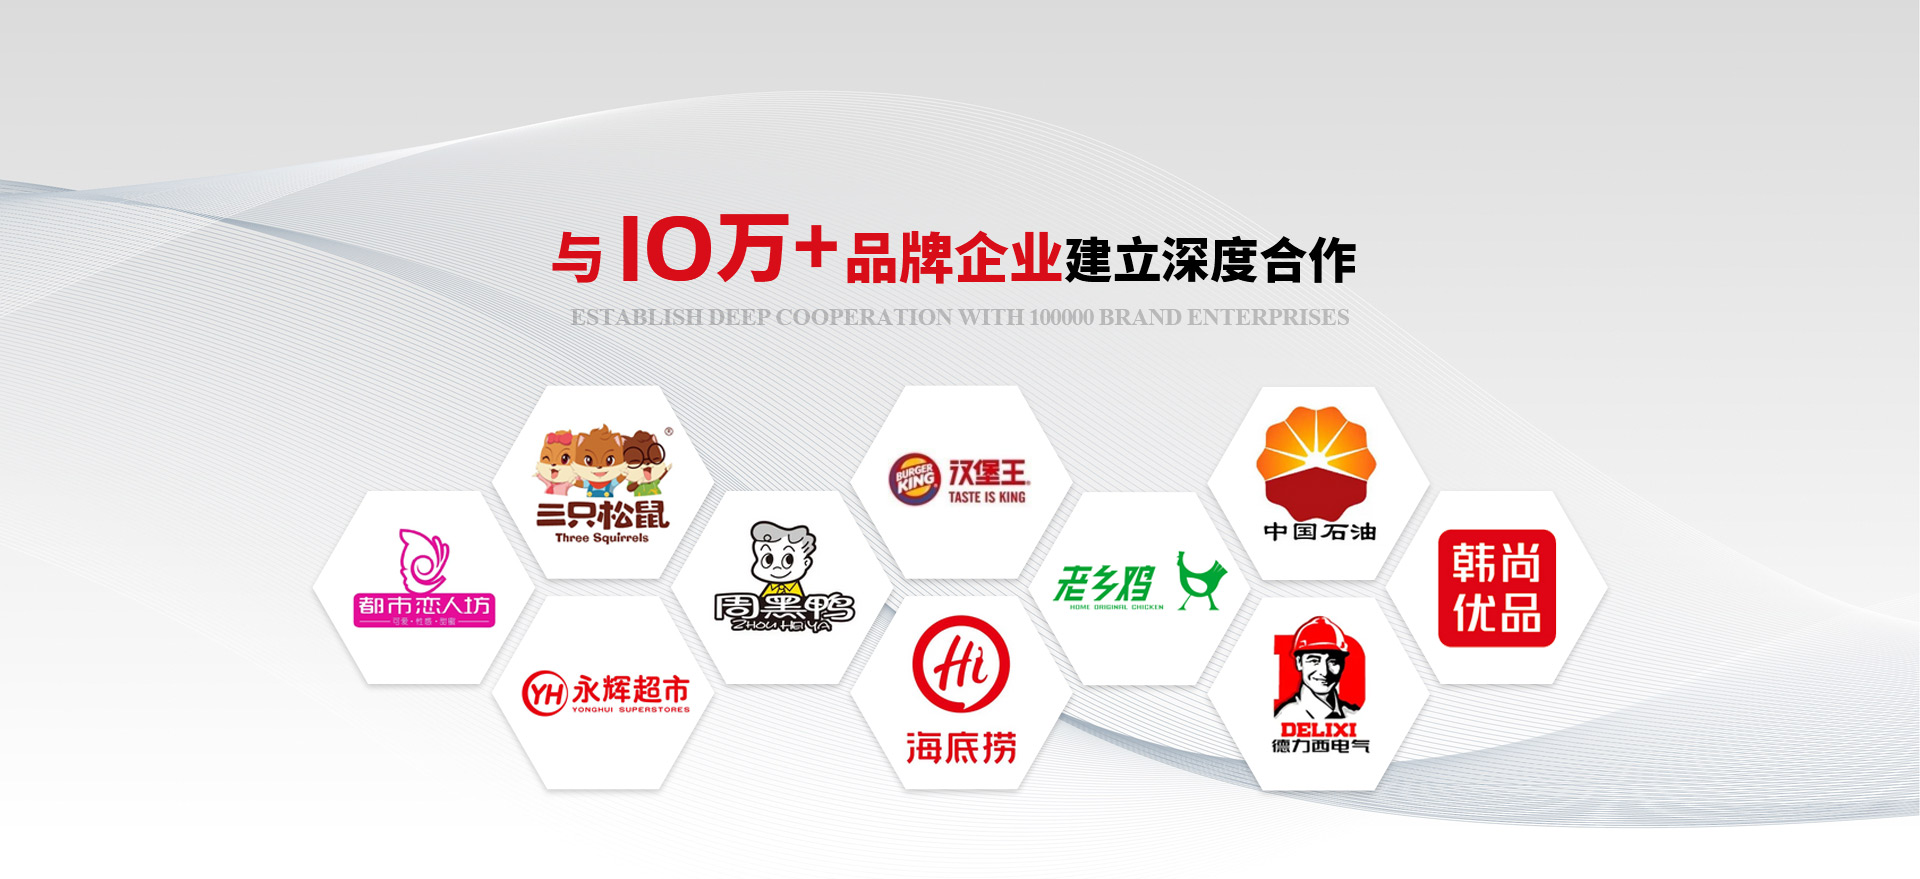 上海樱花与10万+品牌企业建立深度合作